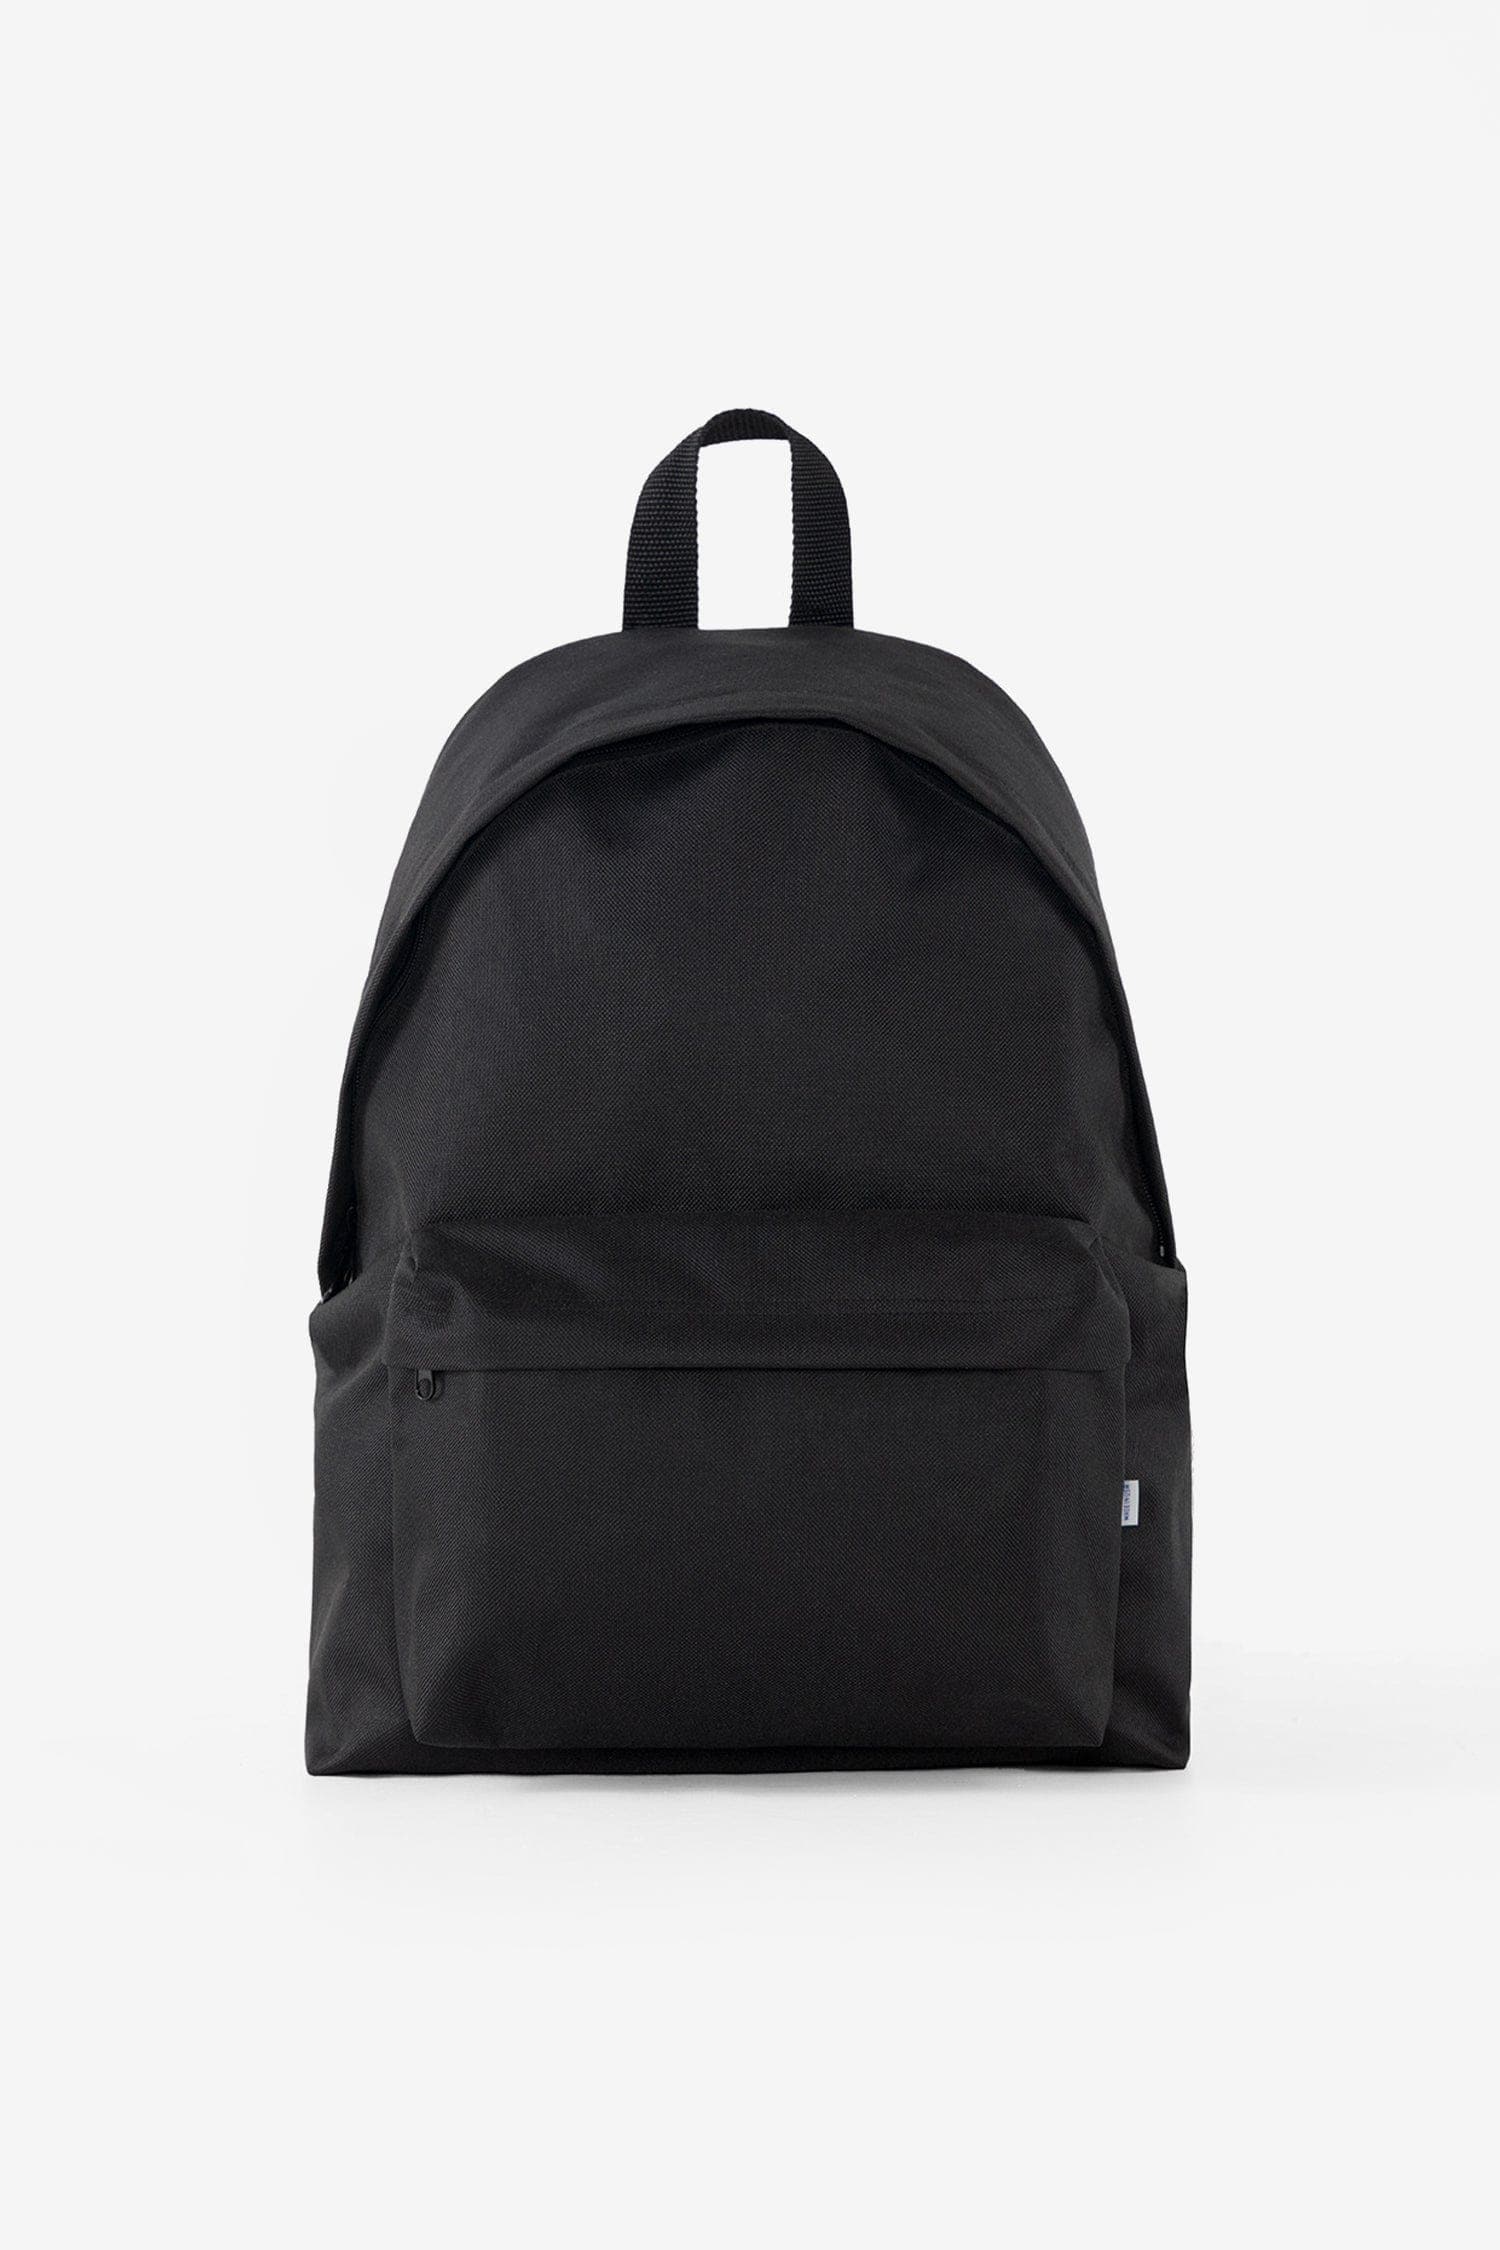 Backpacks – Los Angeles Apparel - Japan